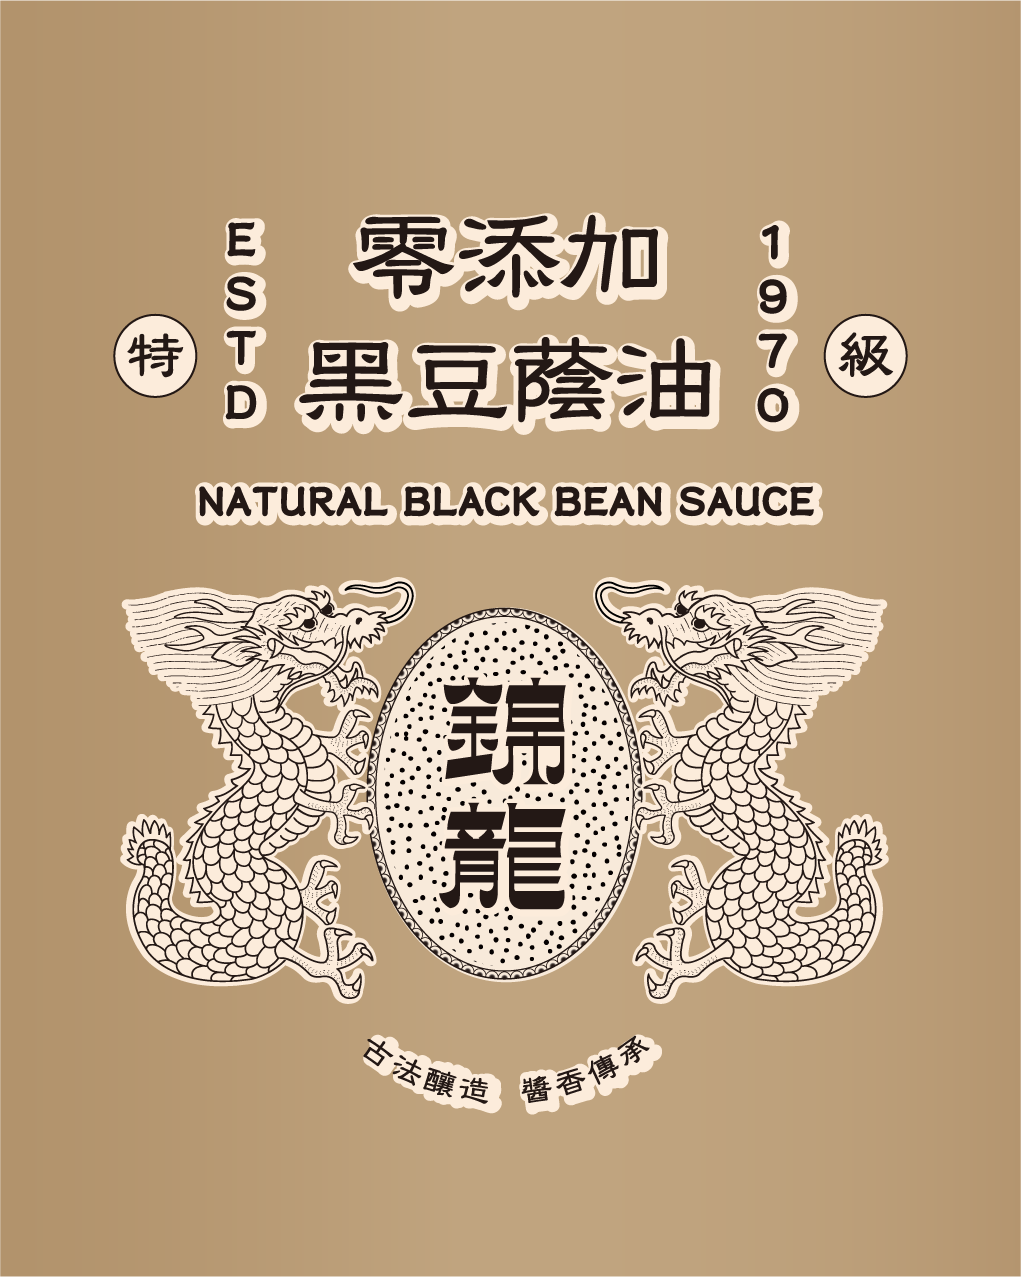 特級零添加黑豆蔭油-Natural Black Bean Sauce